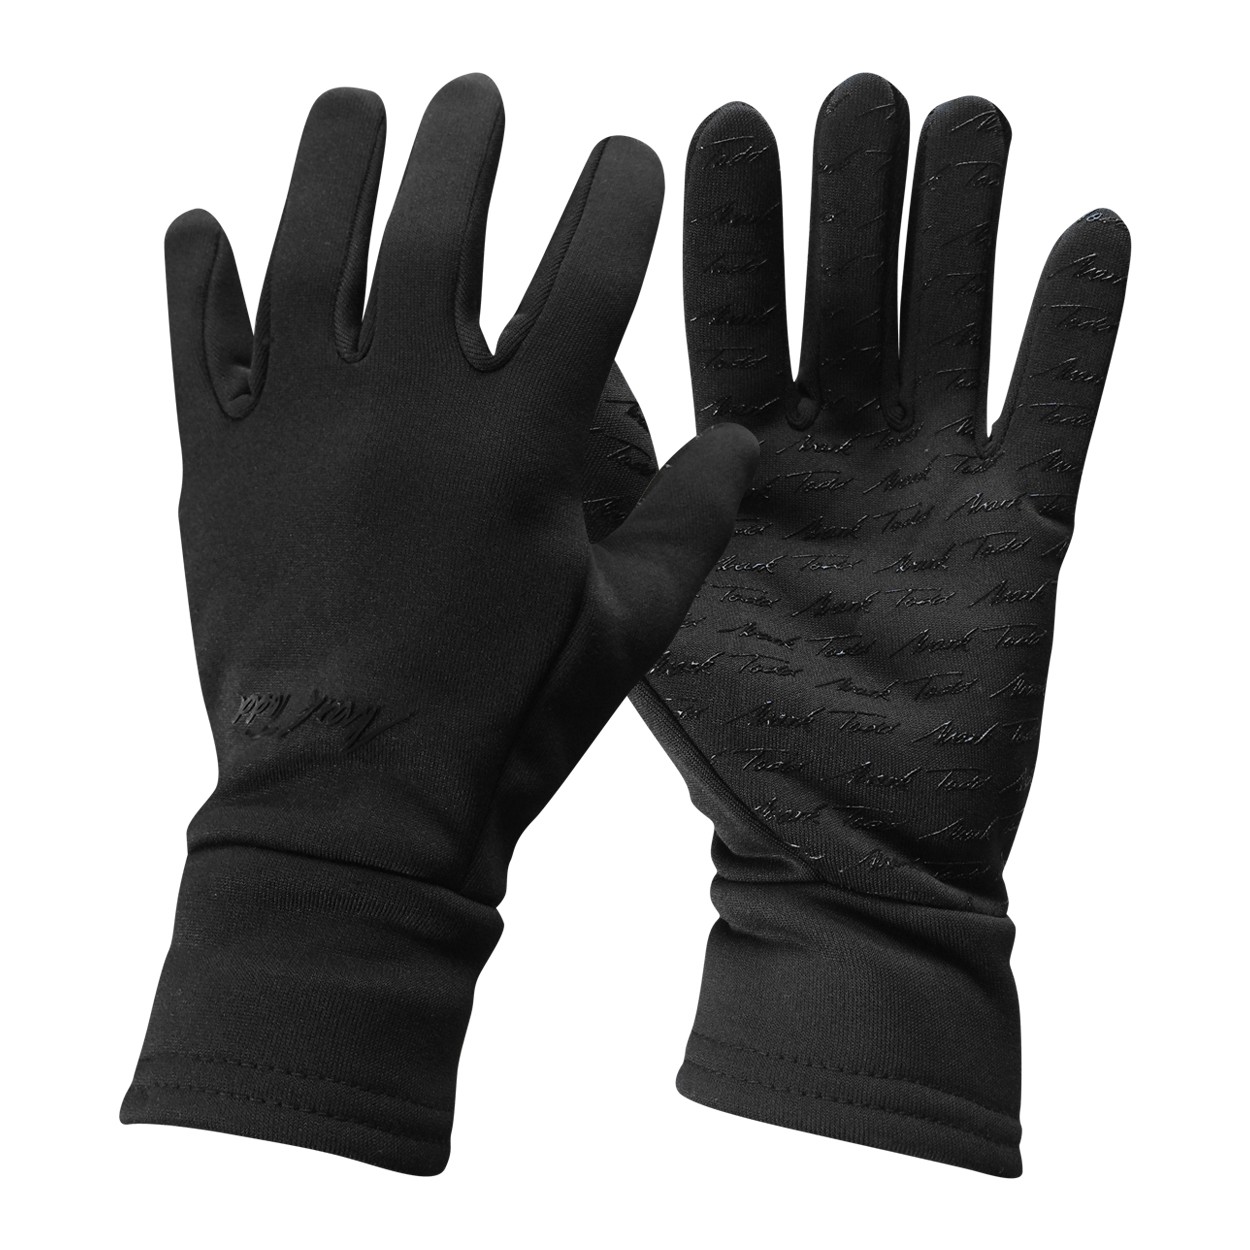 Mark todd winter gloves